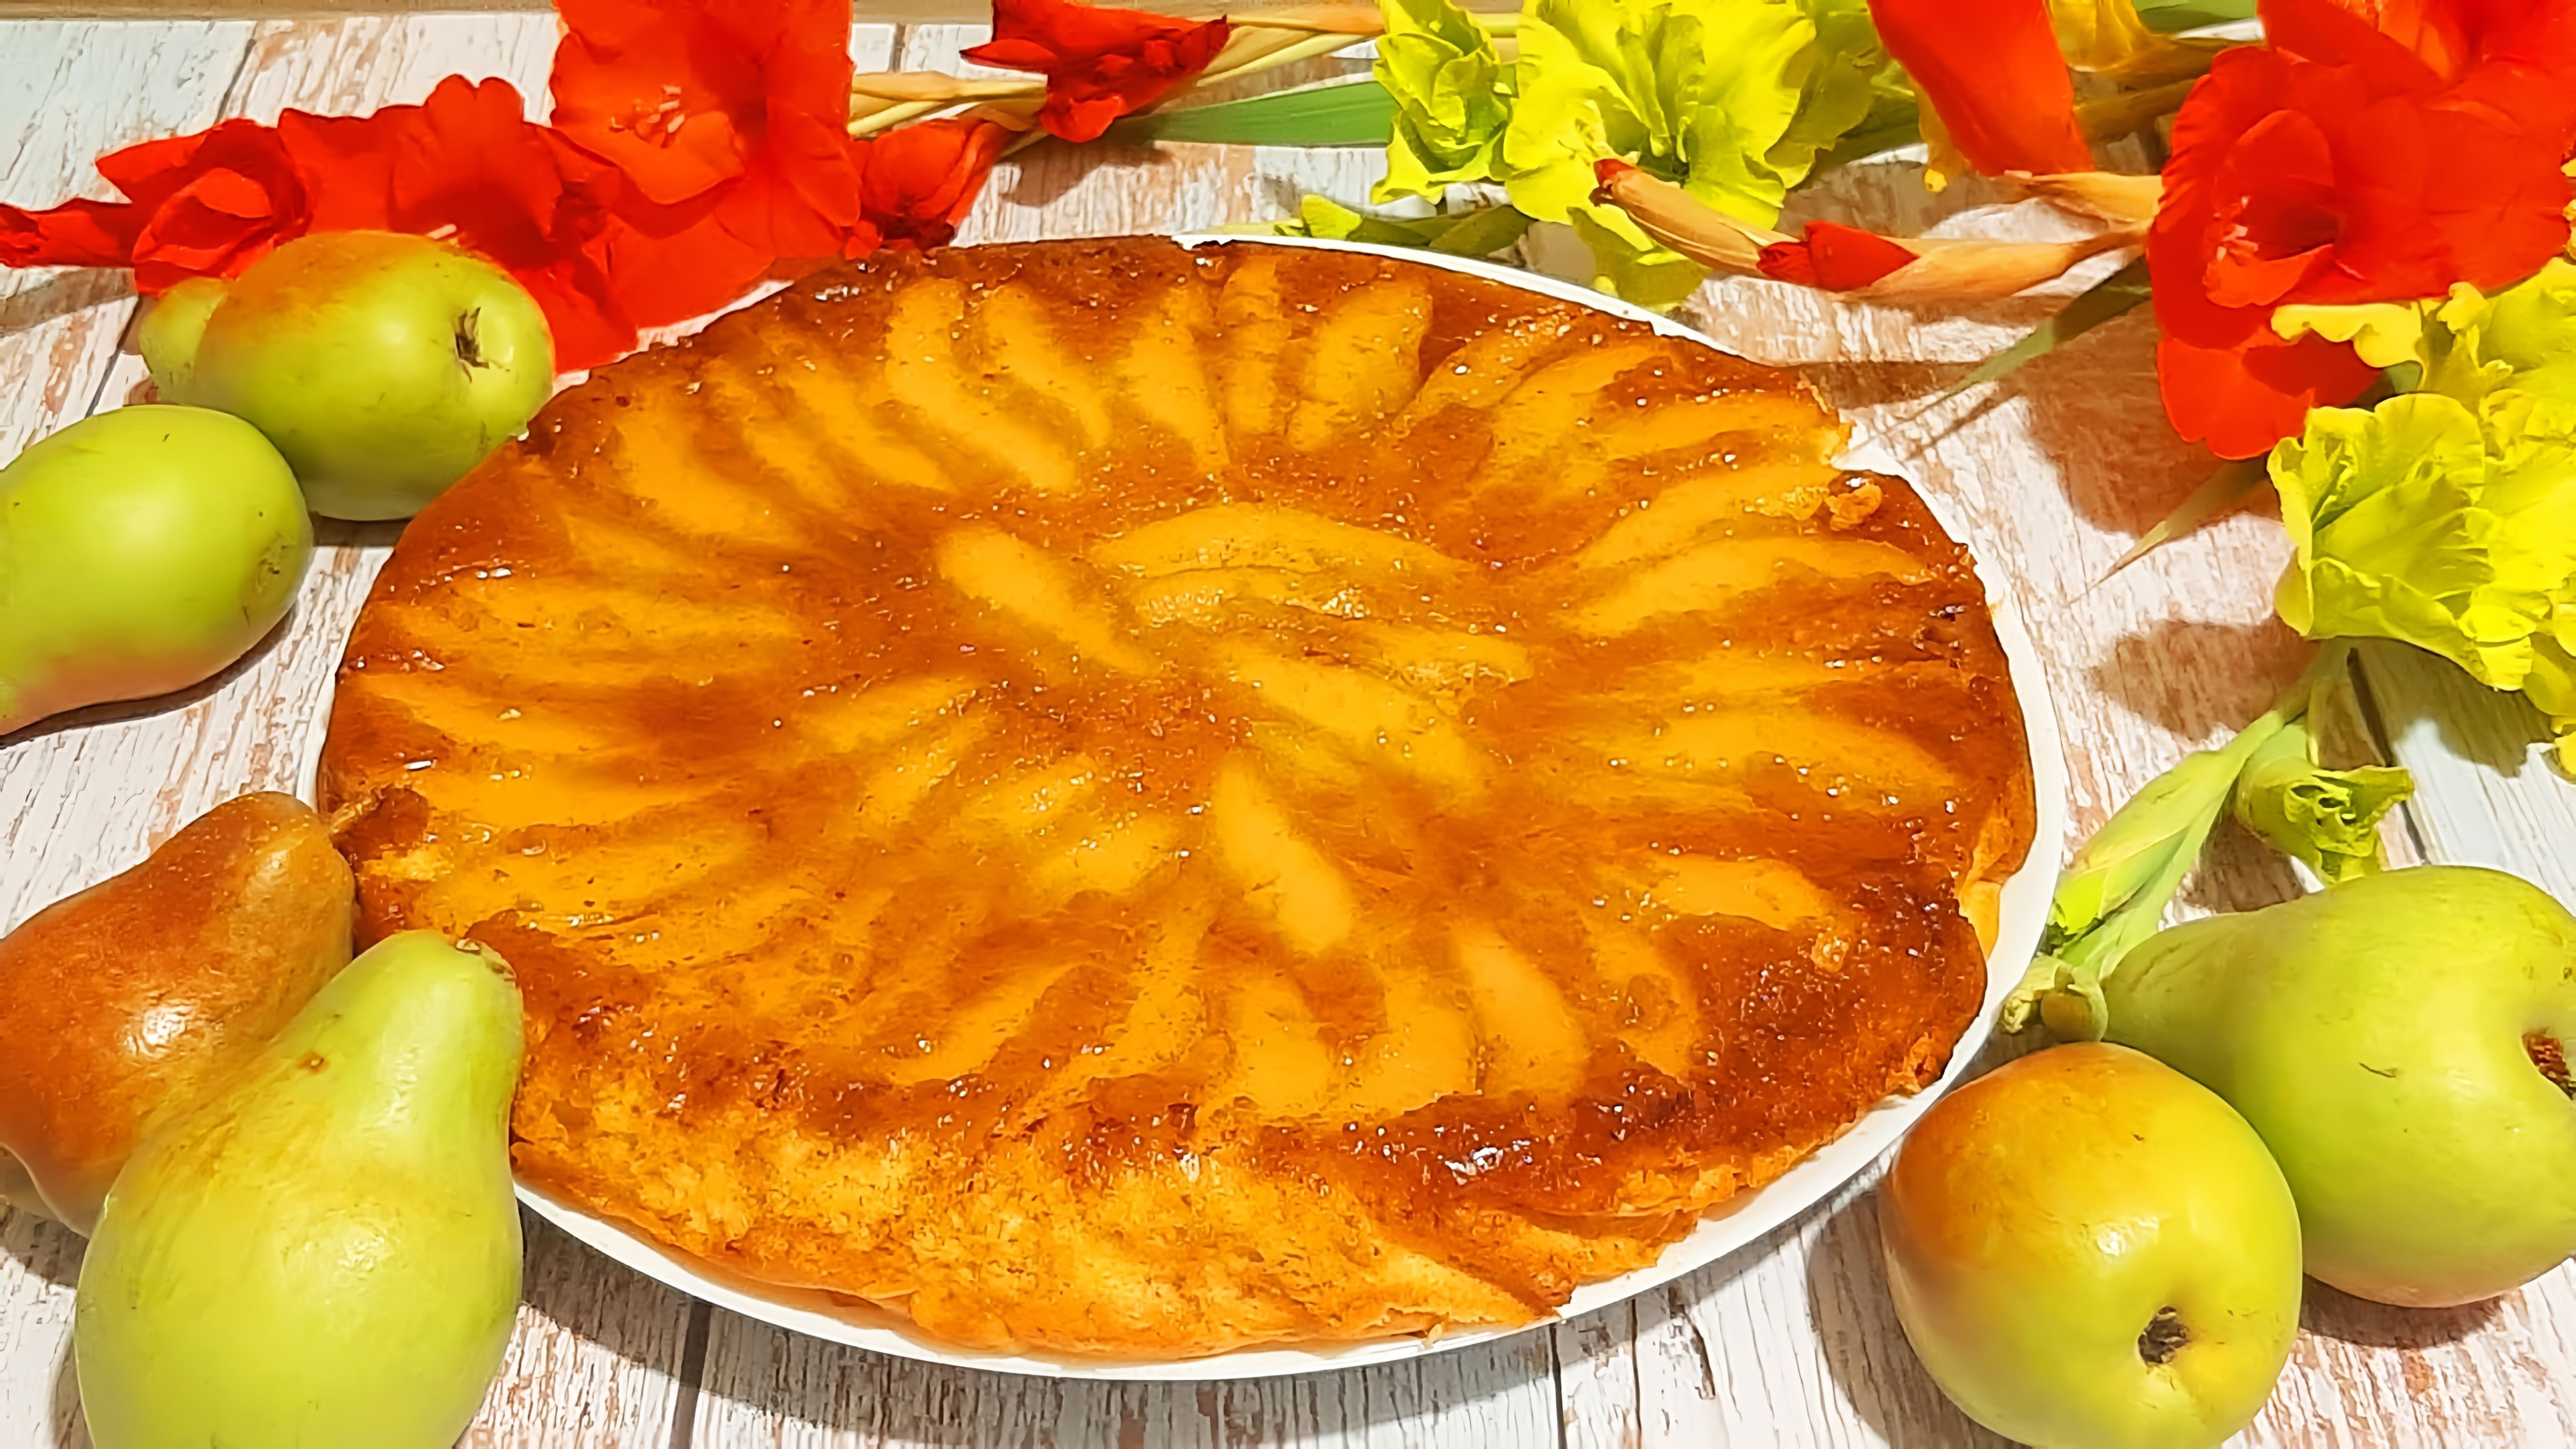 В этом видео демонстрируется рецепт приготовления пирога с карамелизированными грушами